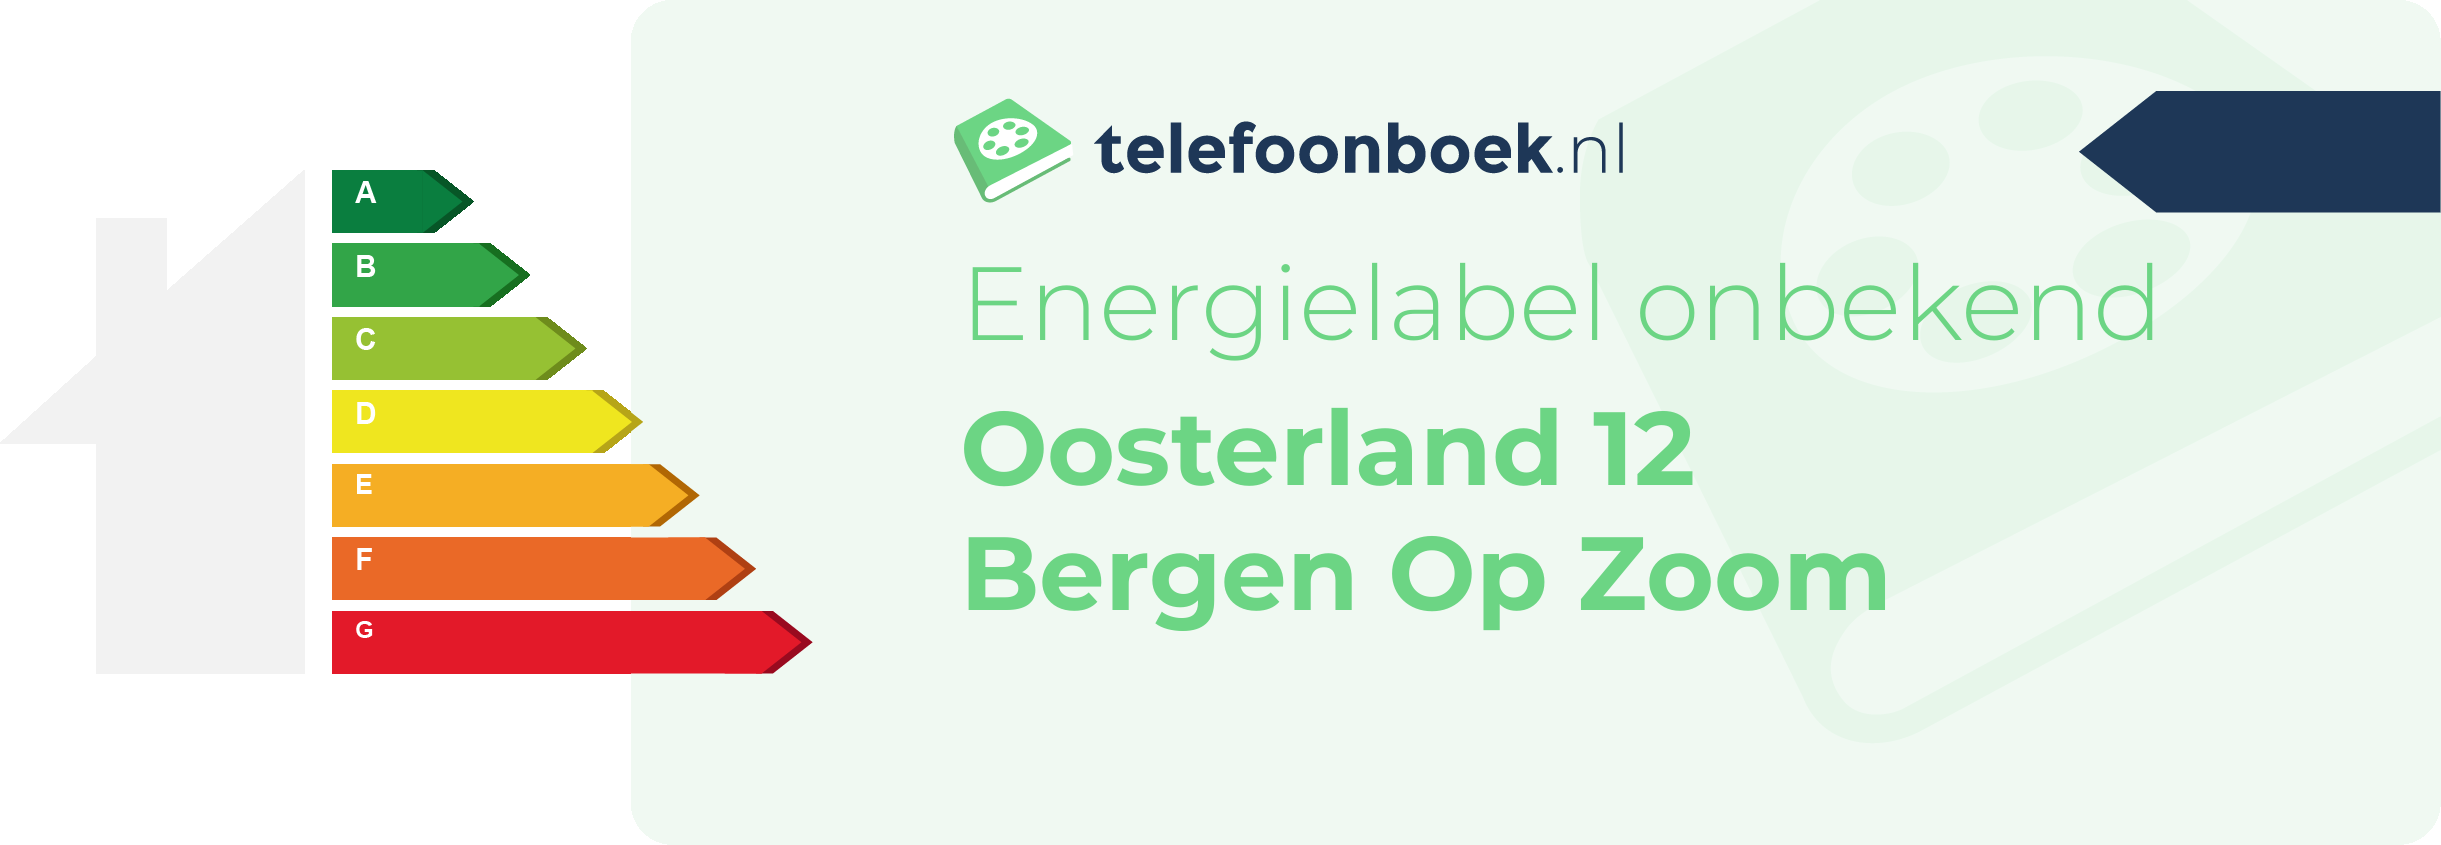 Energielabel Oosterland 12 Bergen Op Zoom